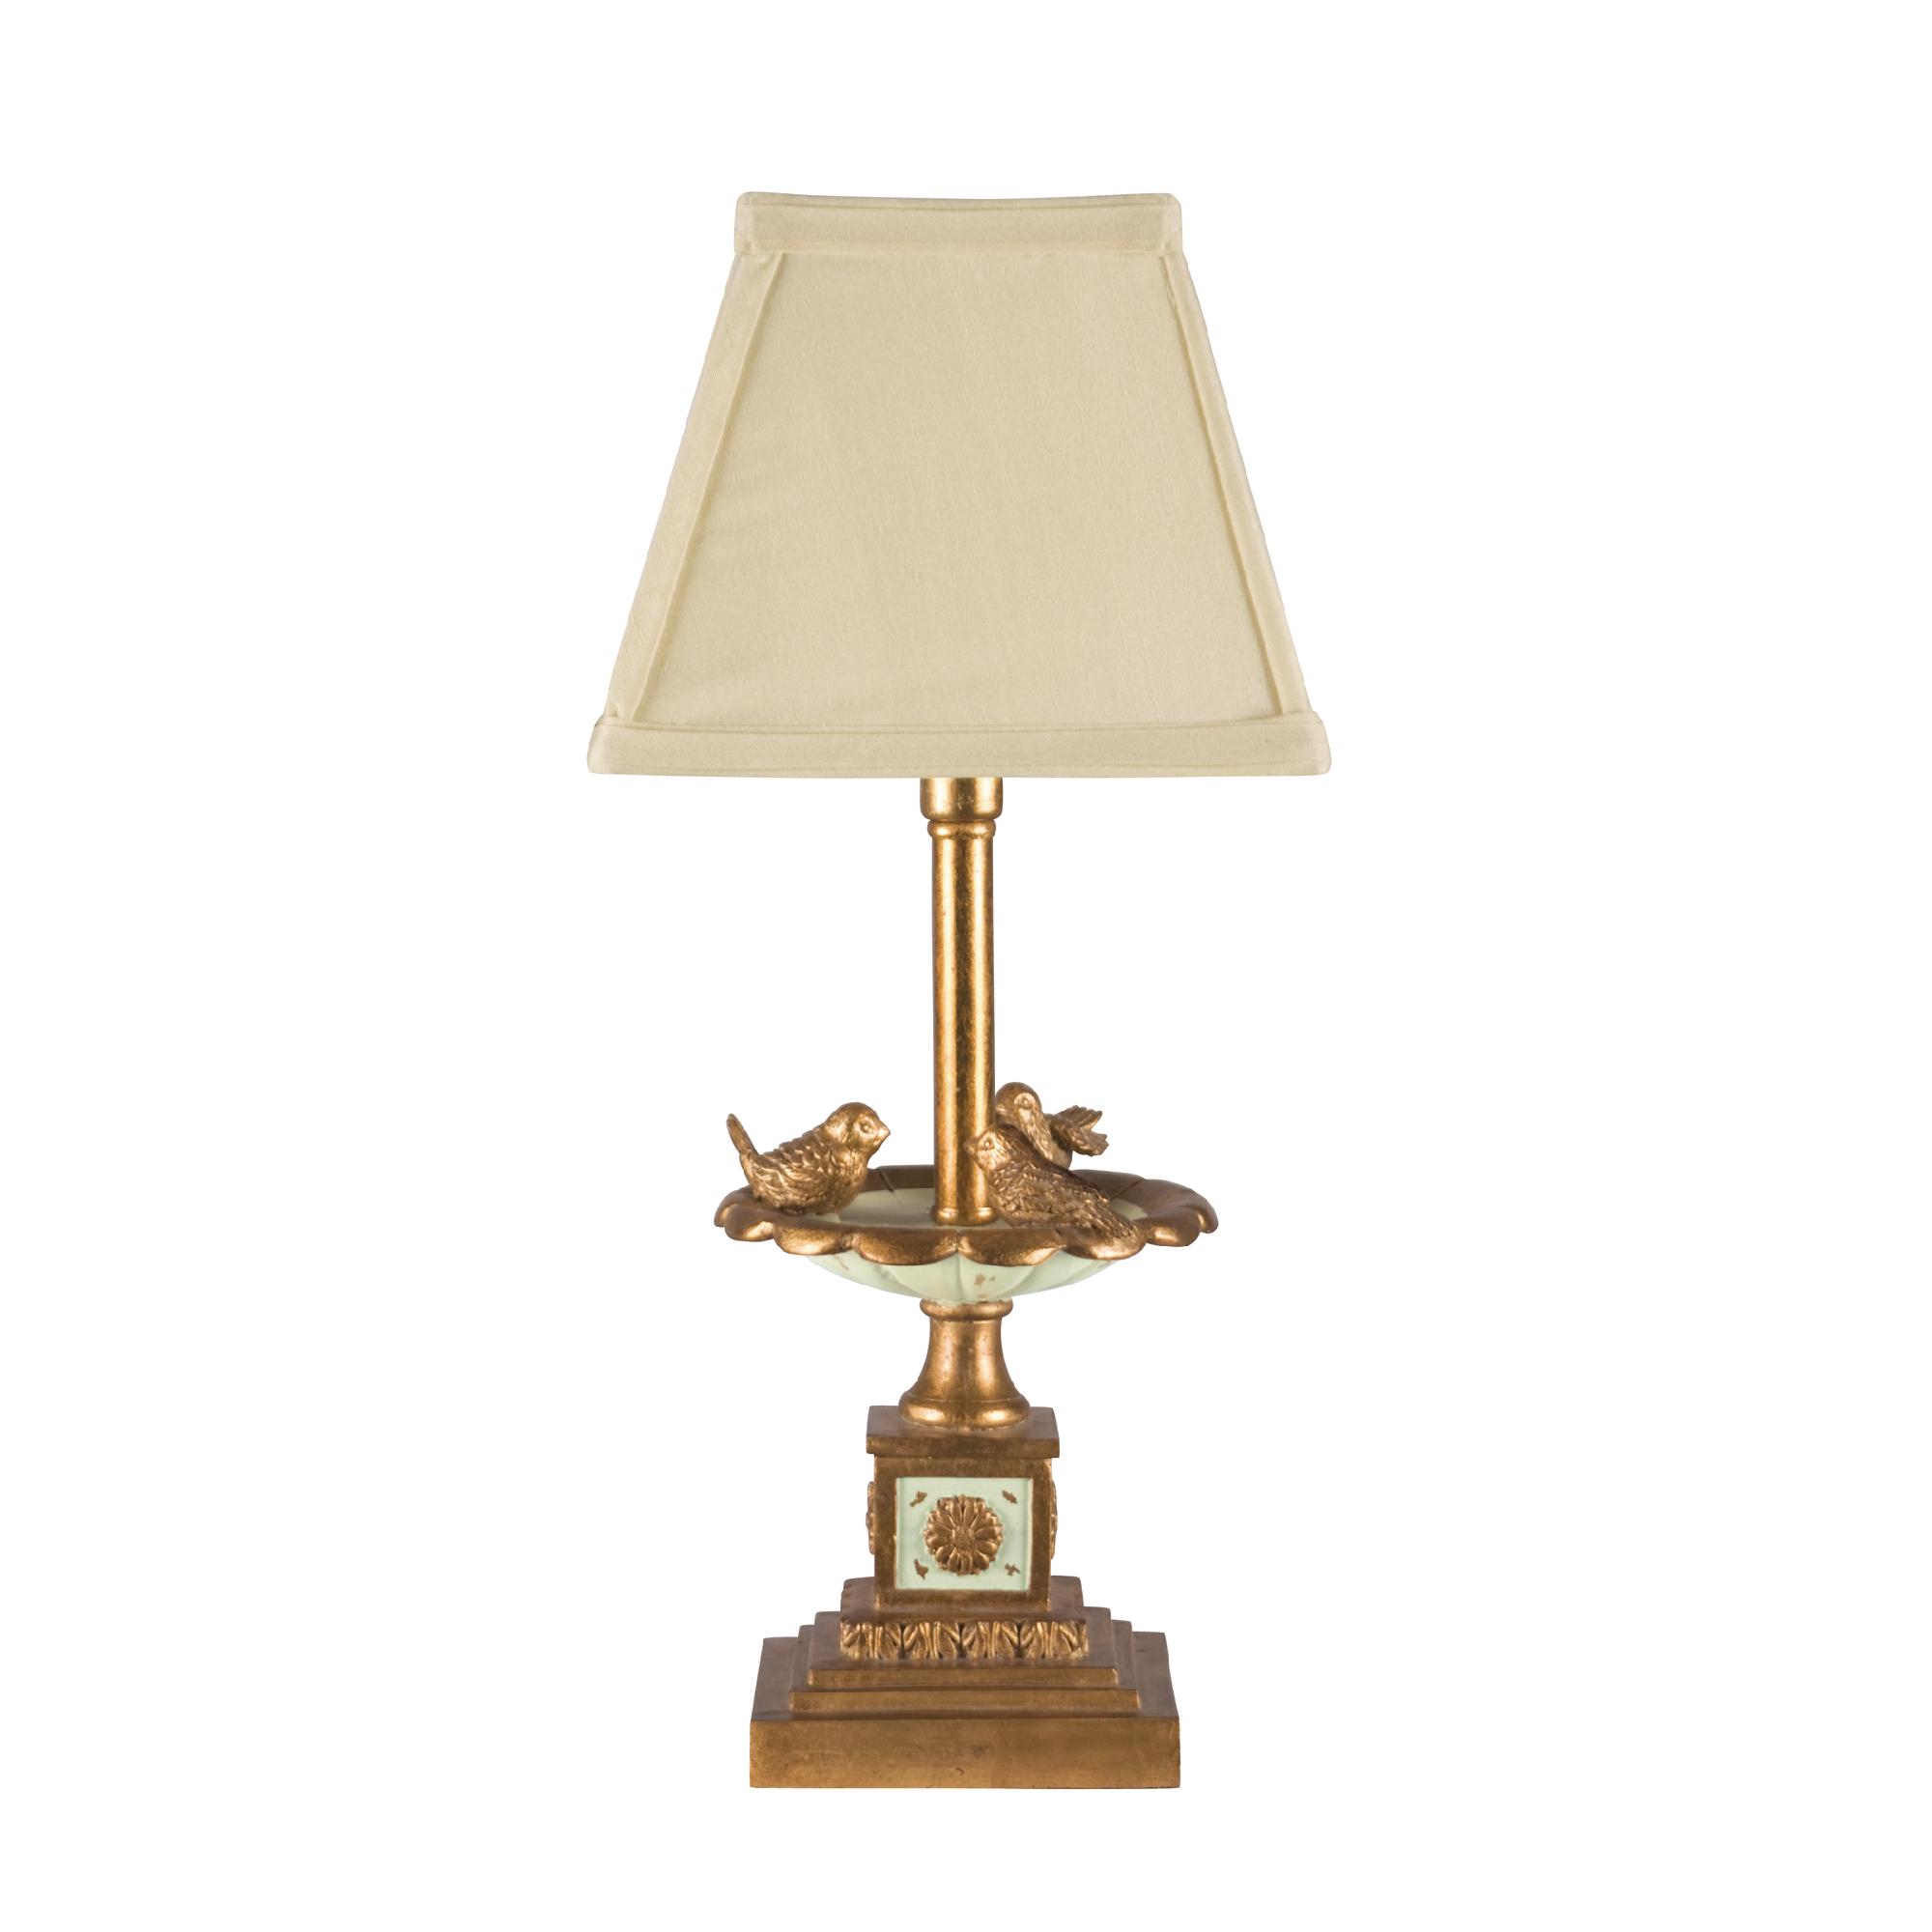 Dimond Bird Bath Bookshelf Table Lamp